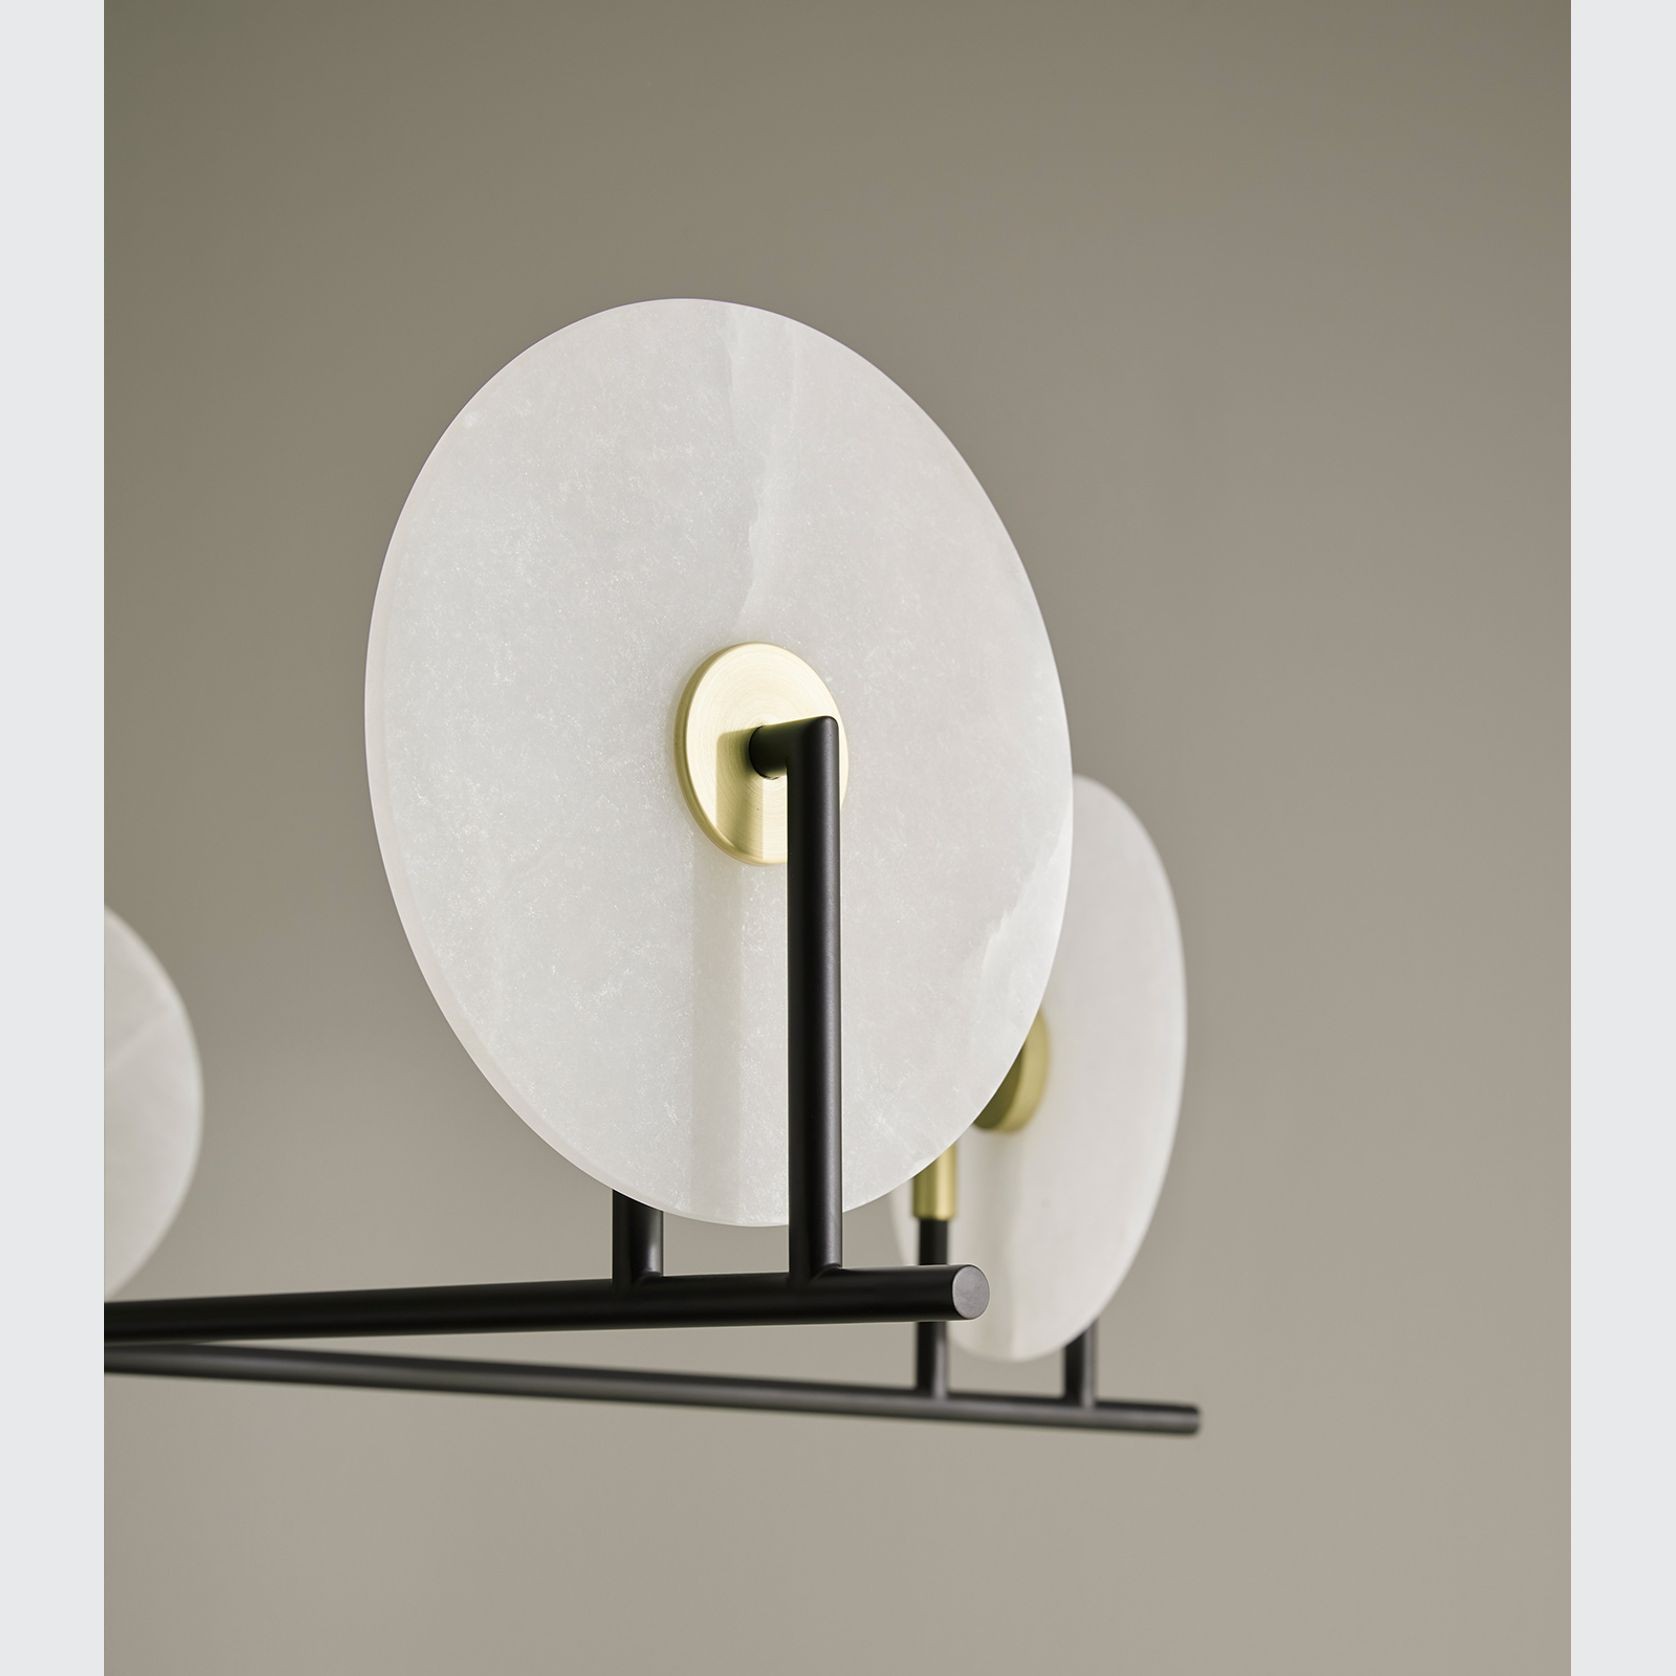 Erto 5 Pendant Light by Aromas gallery detail image